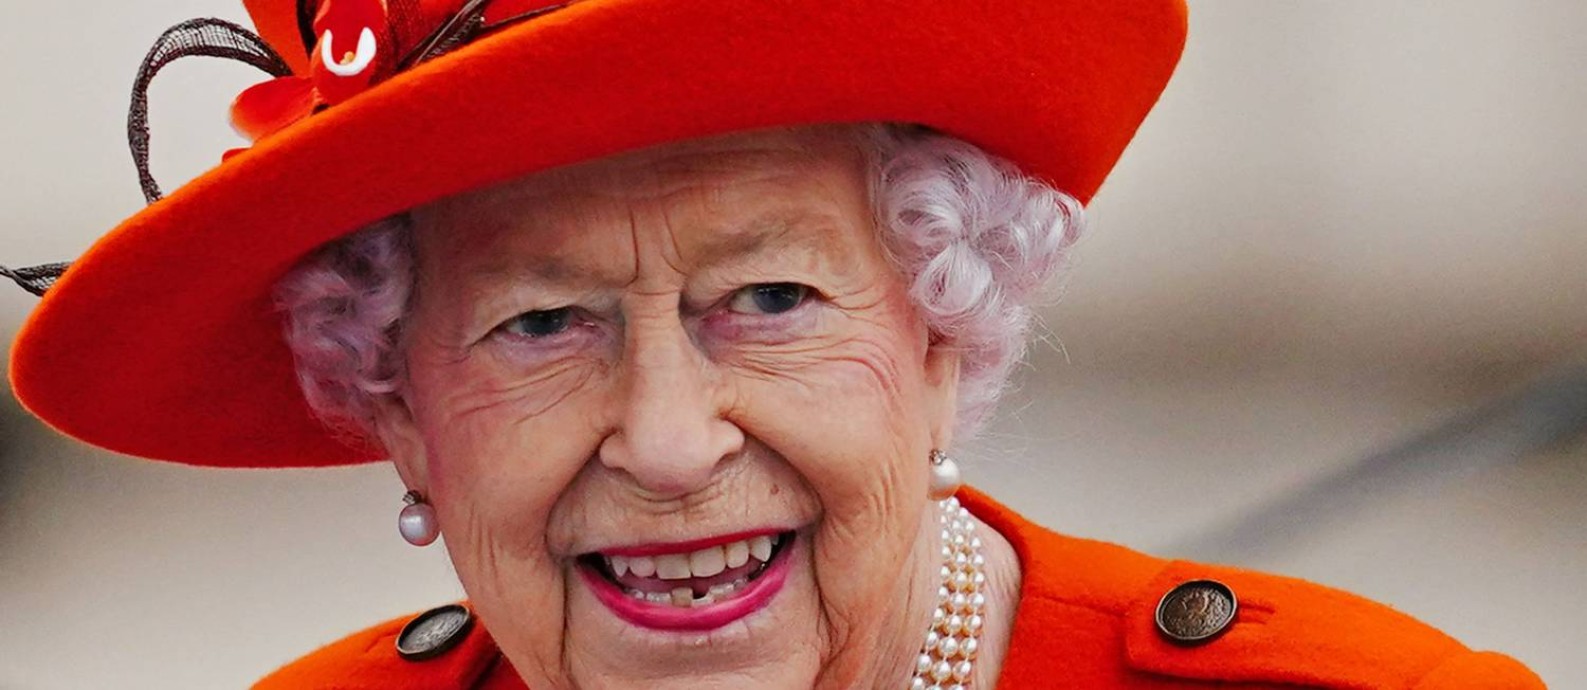 Rainha Elizabeth II participa de evento no pátio do Palácio de Buckingham, em Londres, em outubro de 2021 Foto: VICTORIA JONES / AFP